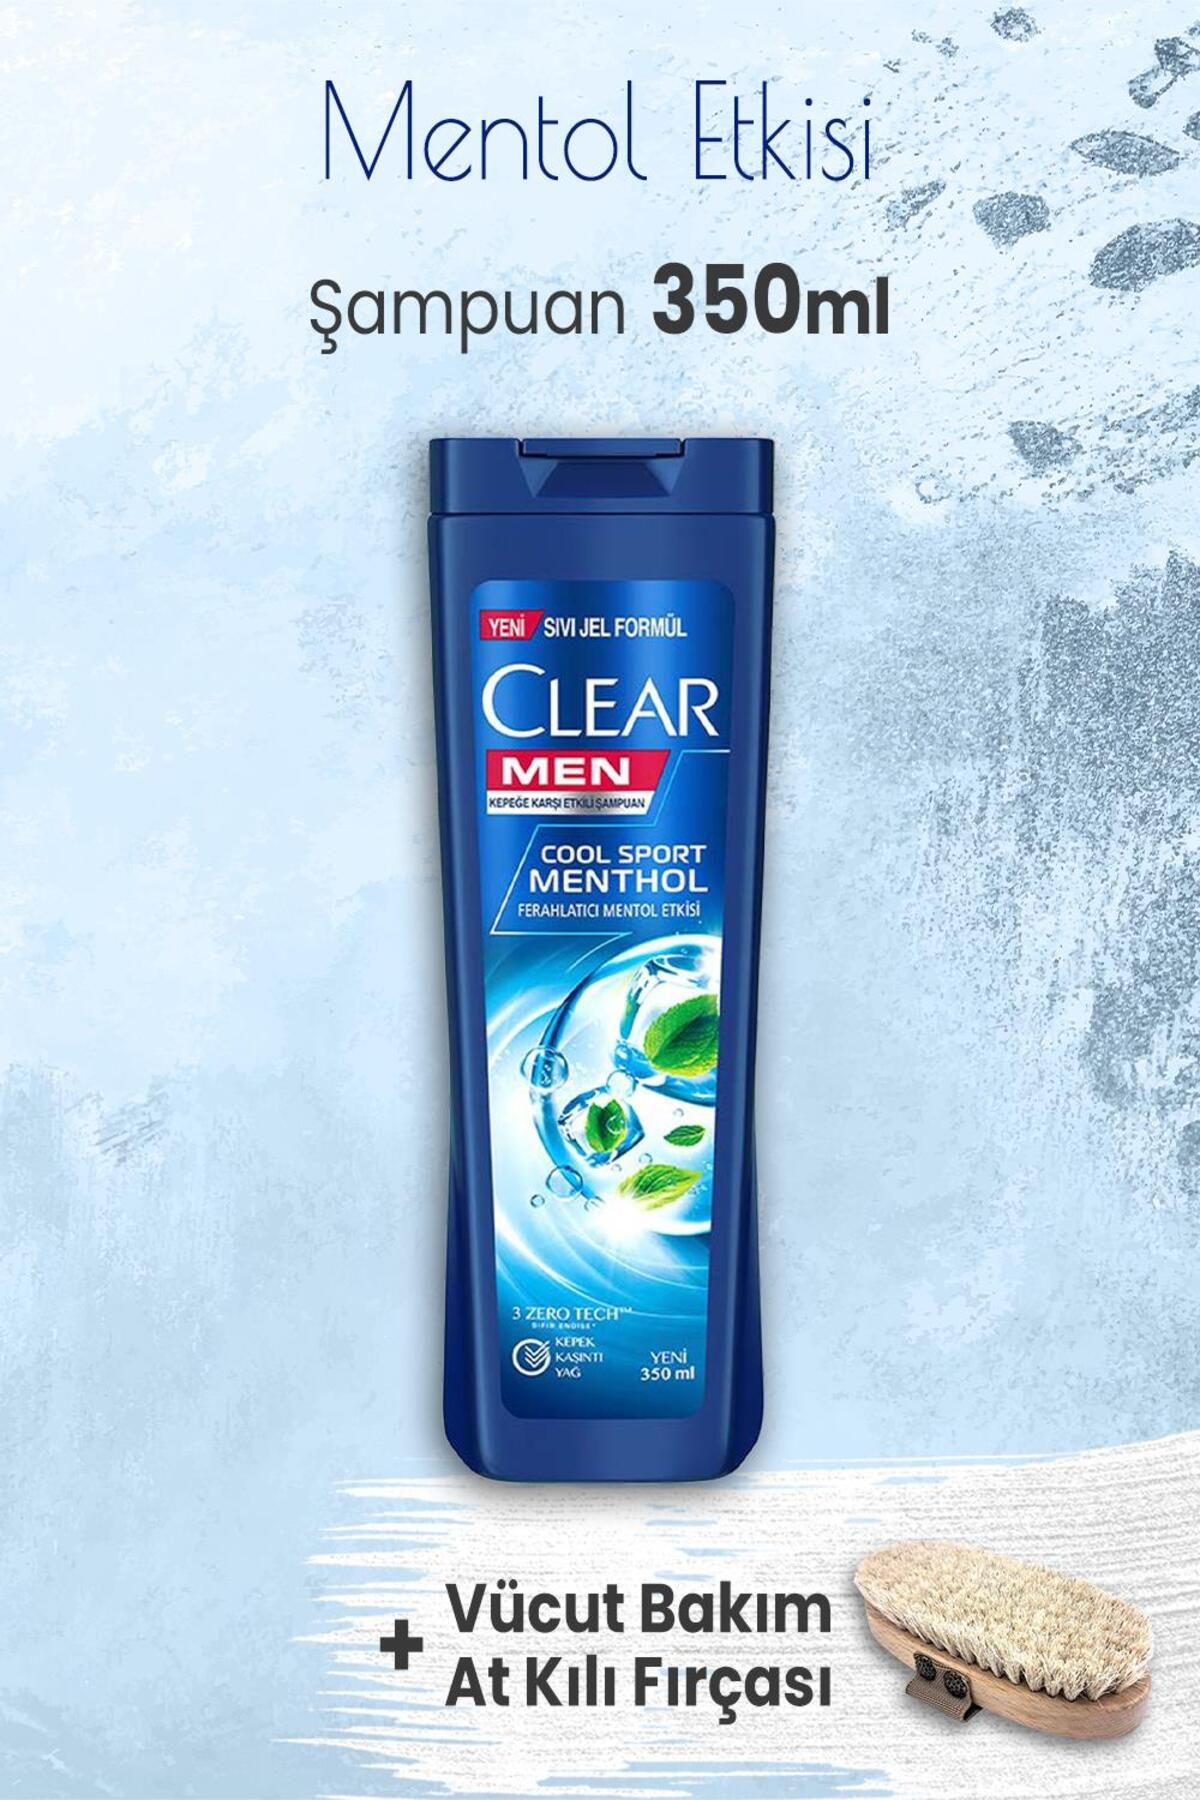 Clear Men Şampuan Mentol Etkisi 350 ml ve Vücut Bakımı At Kılı Fırçası